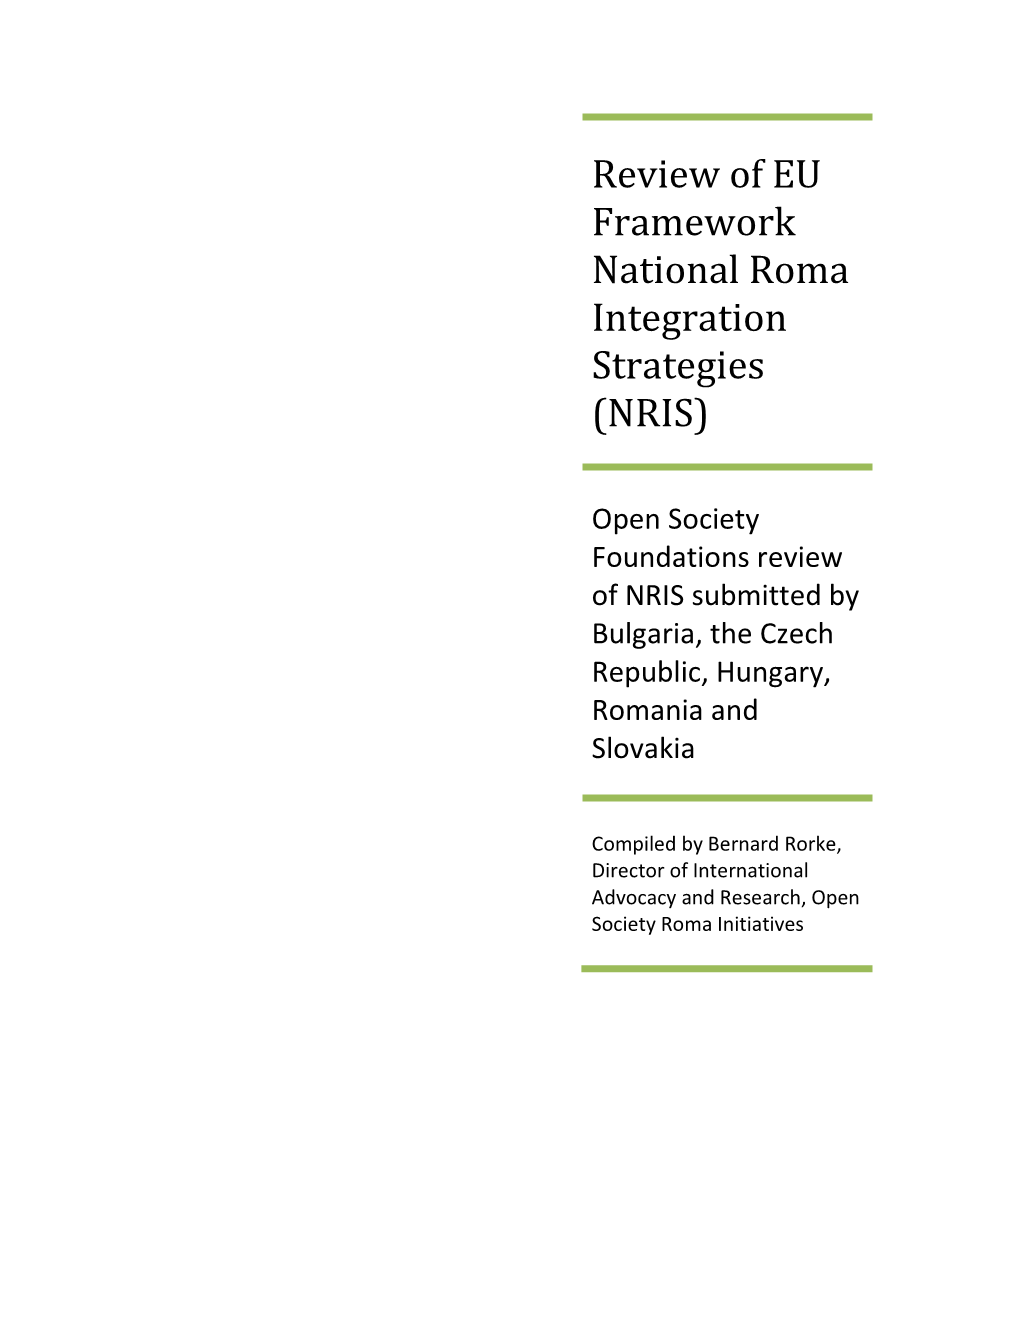 Review of EU Framework National Roma Integration Strategies (NRIS)